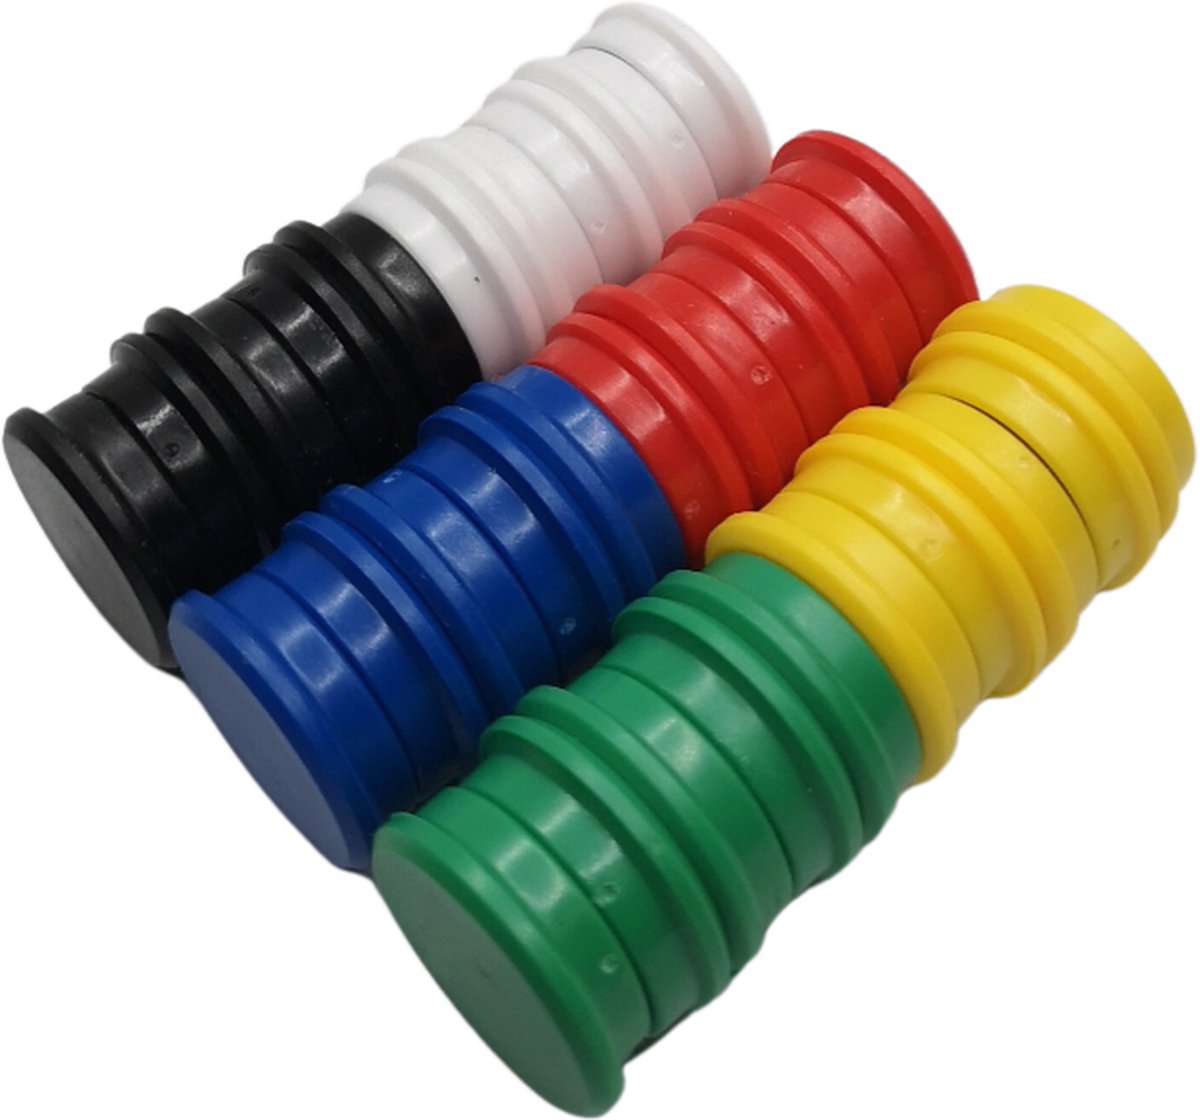 30 stuks sterke ronde whiteboard magneten set, deze memo magneetjes zijn gekleurd in zes opvallende kleuren rood, wit, blauw, groen, geel en zwart - Lowbudget tools